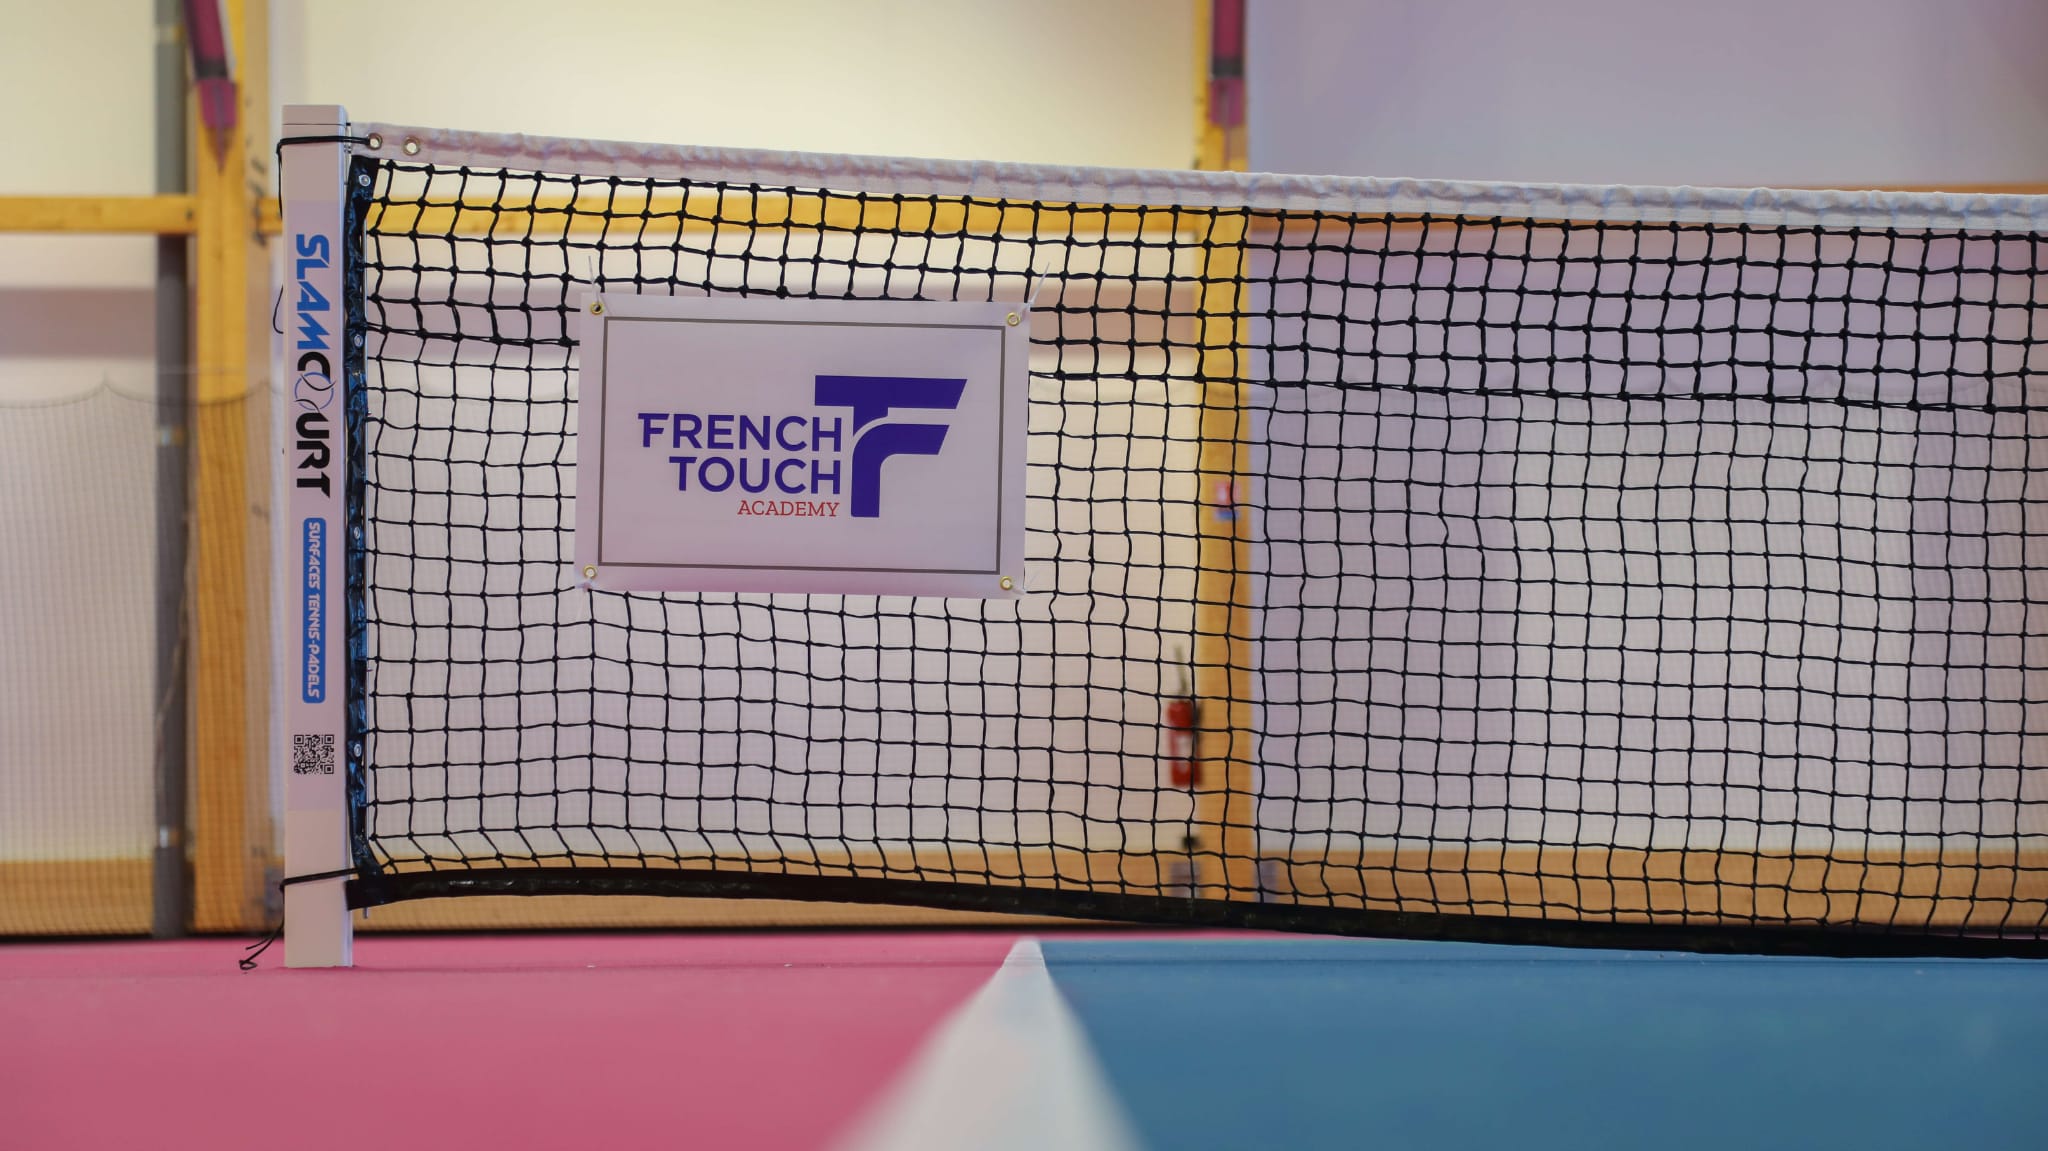 Siatka do tenisa z logo akademii French Touch